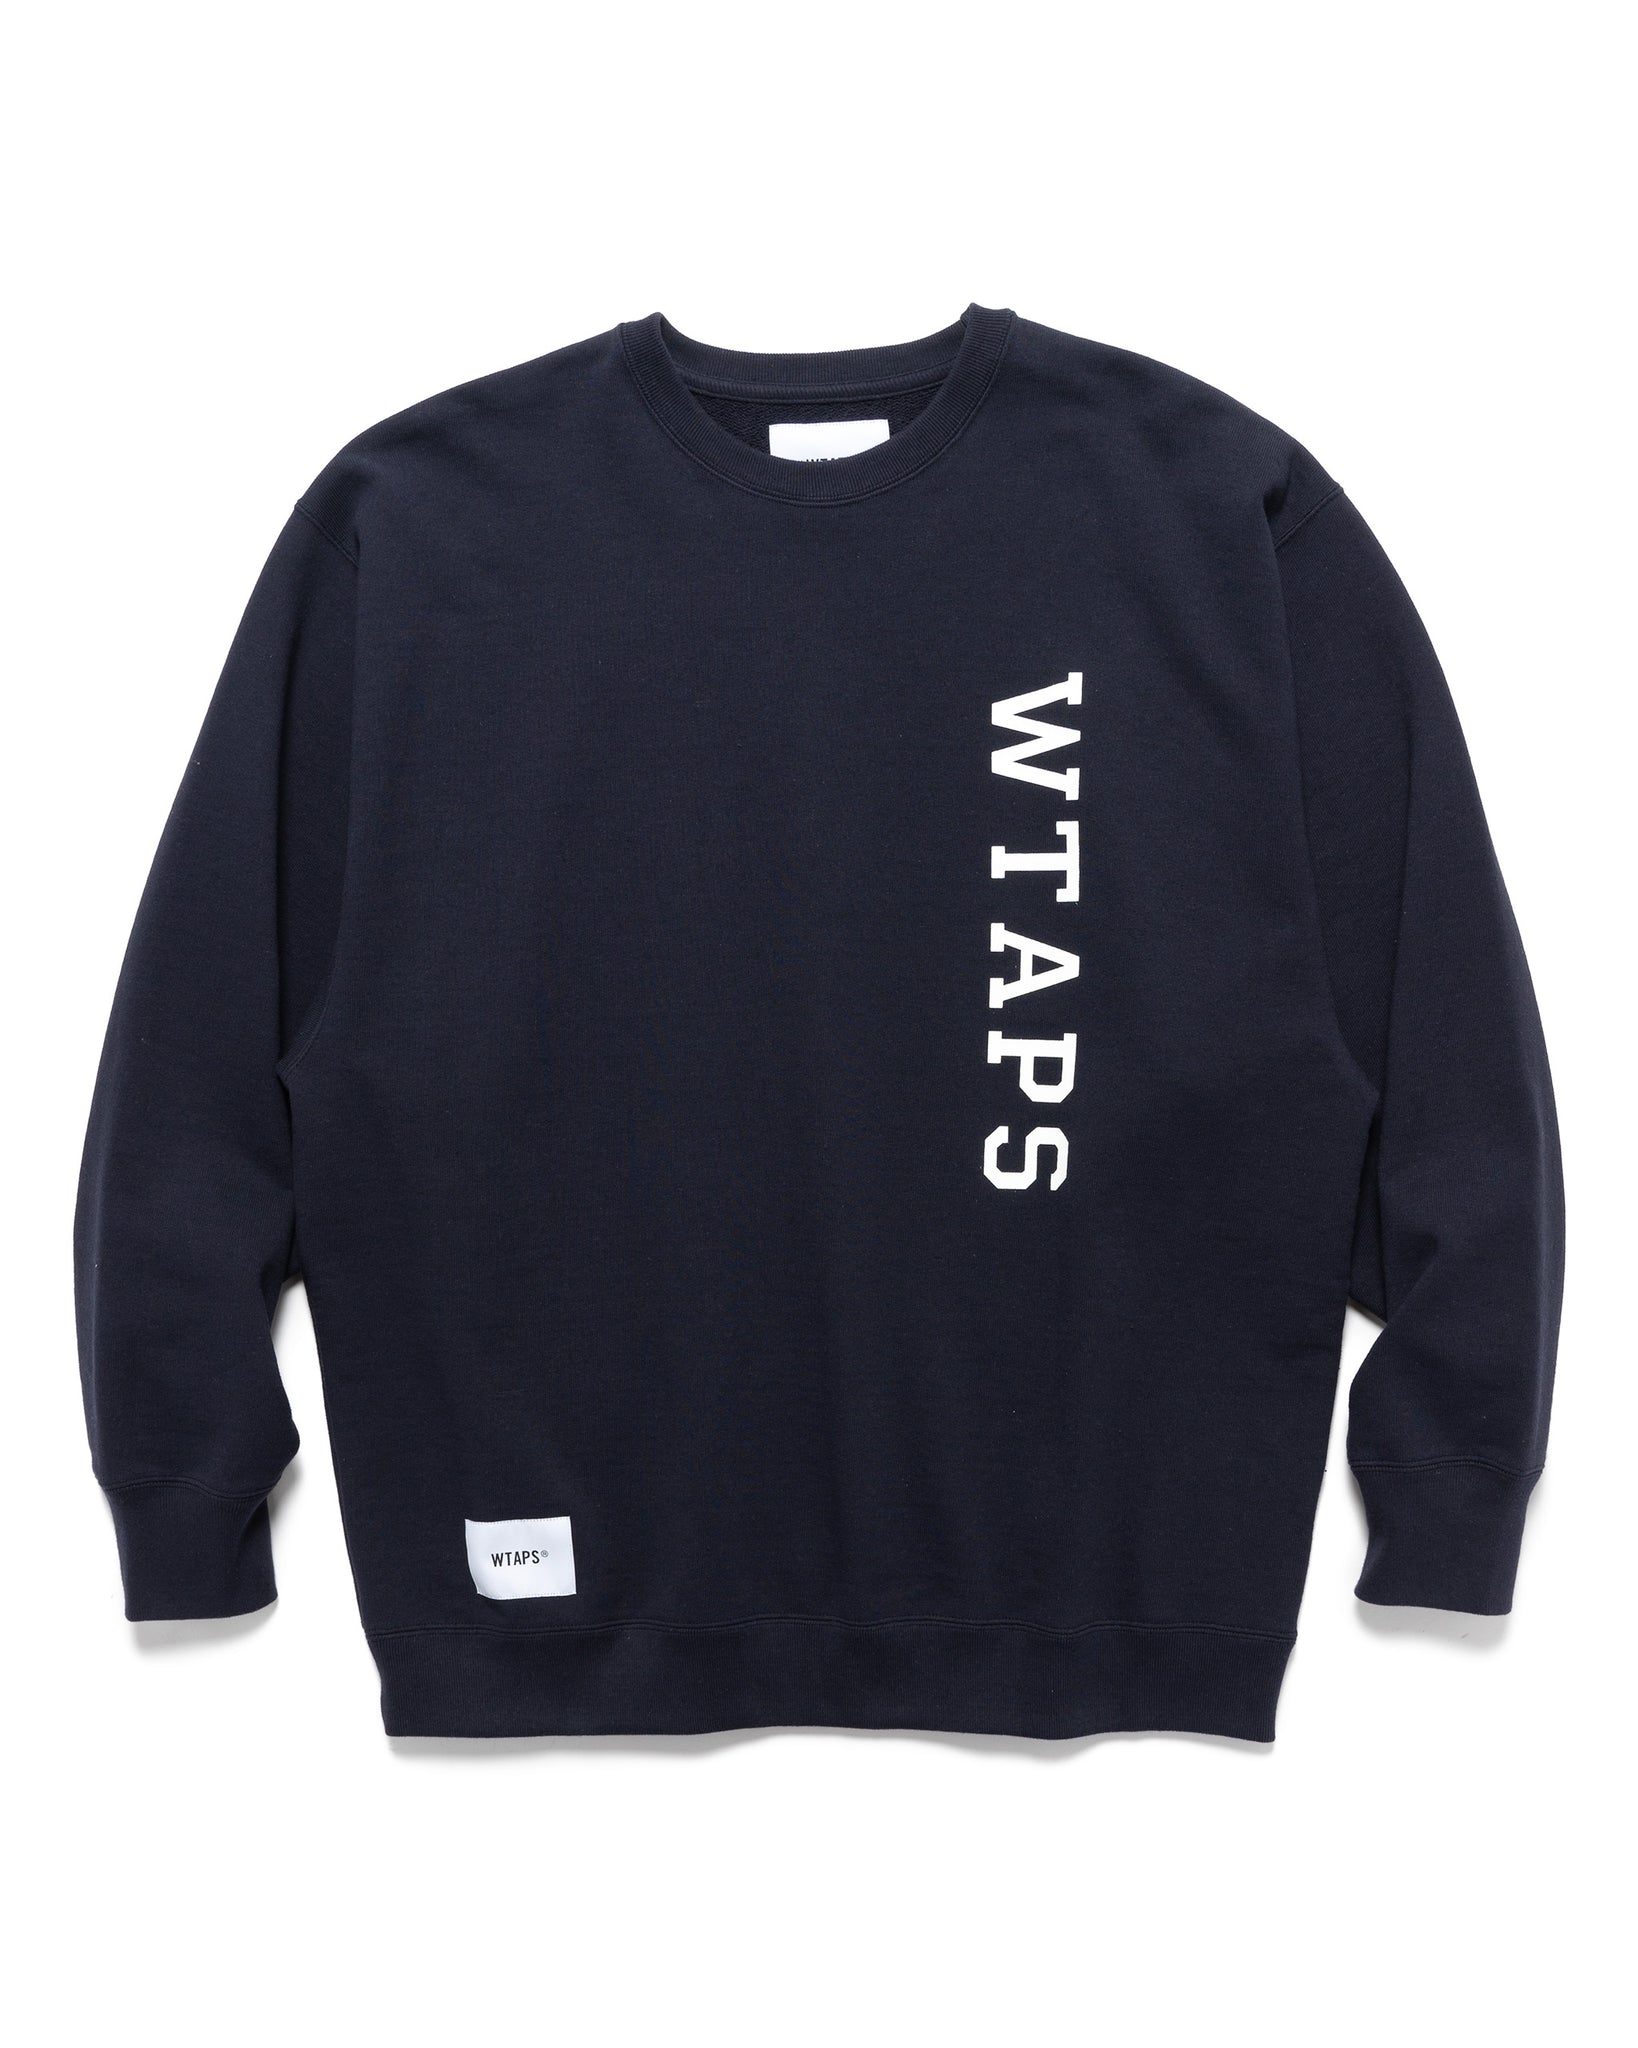 Design 01 / Sweater / Cotton. College Navy